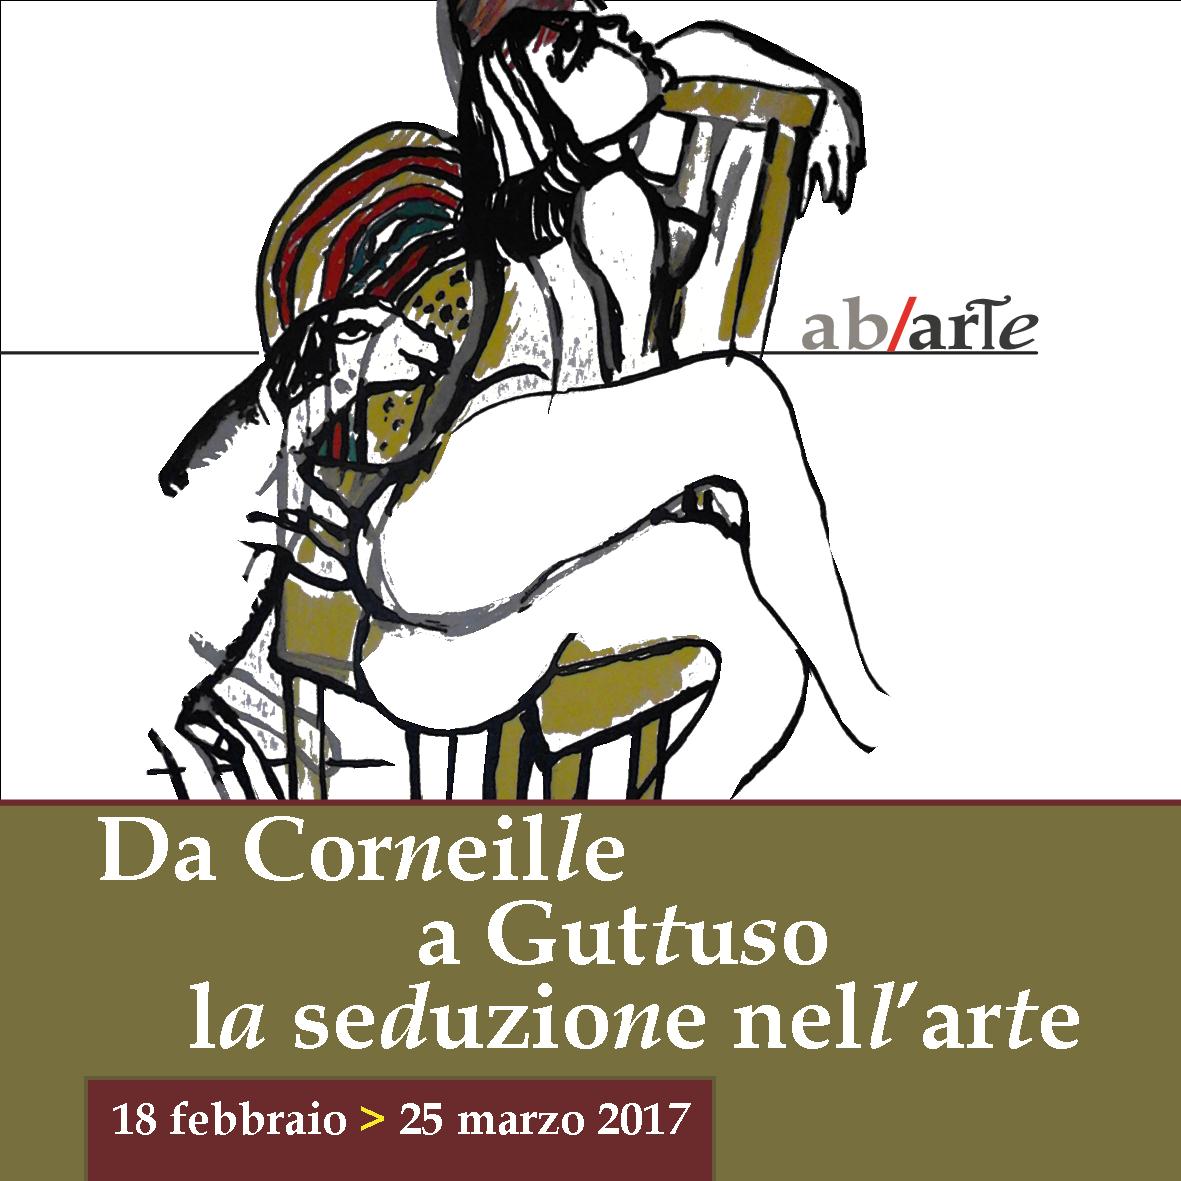 Da Corneille a Guttuso la seduzione nell’arte